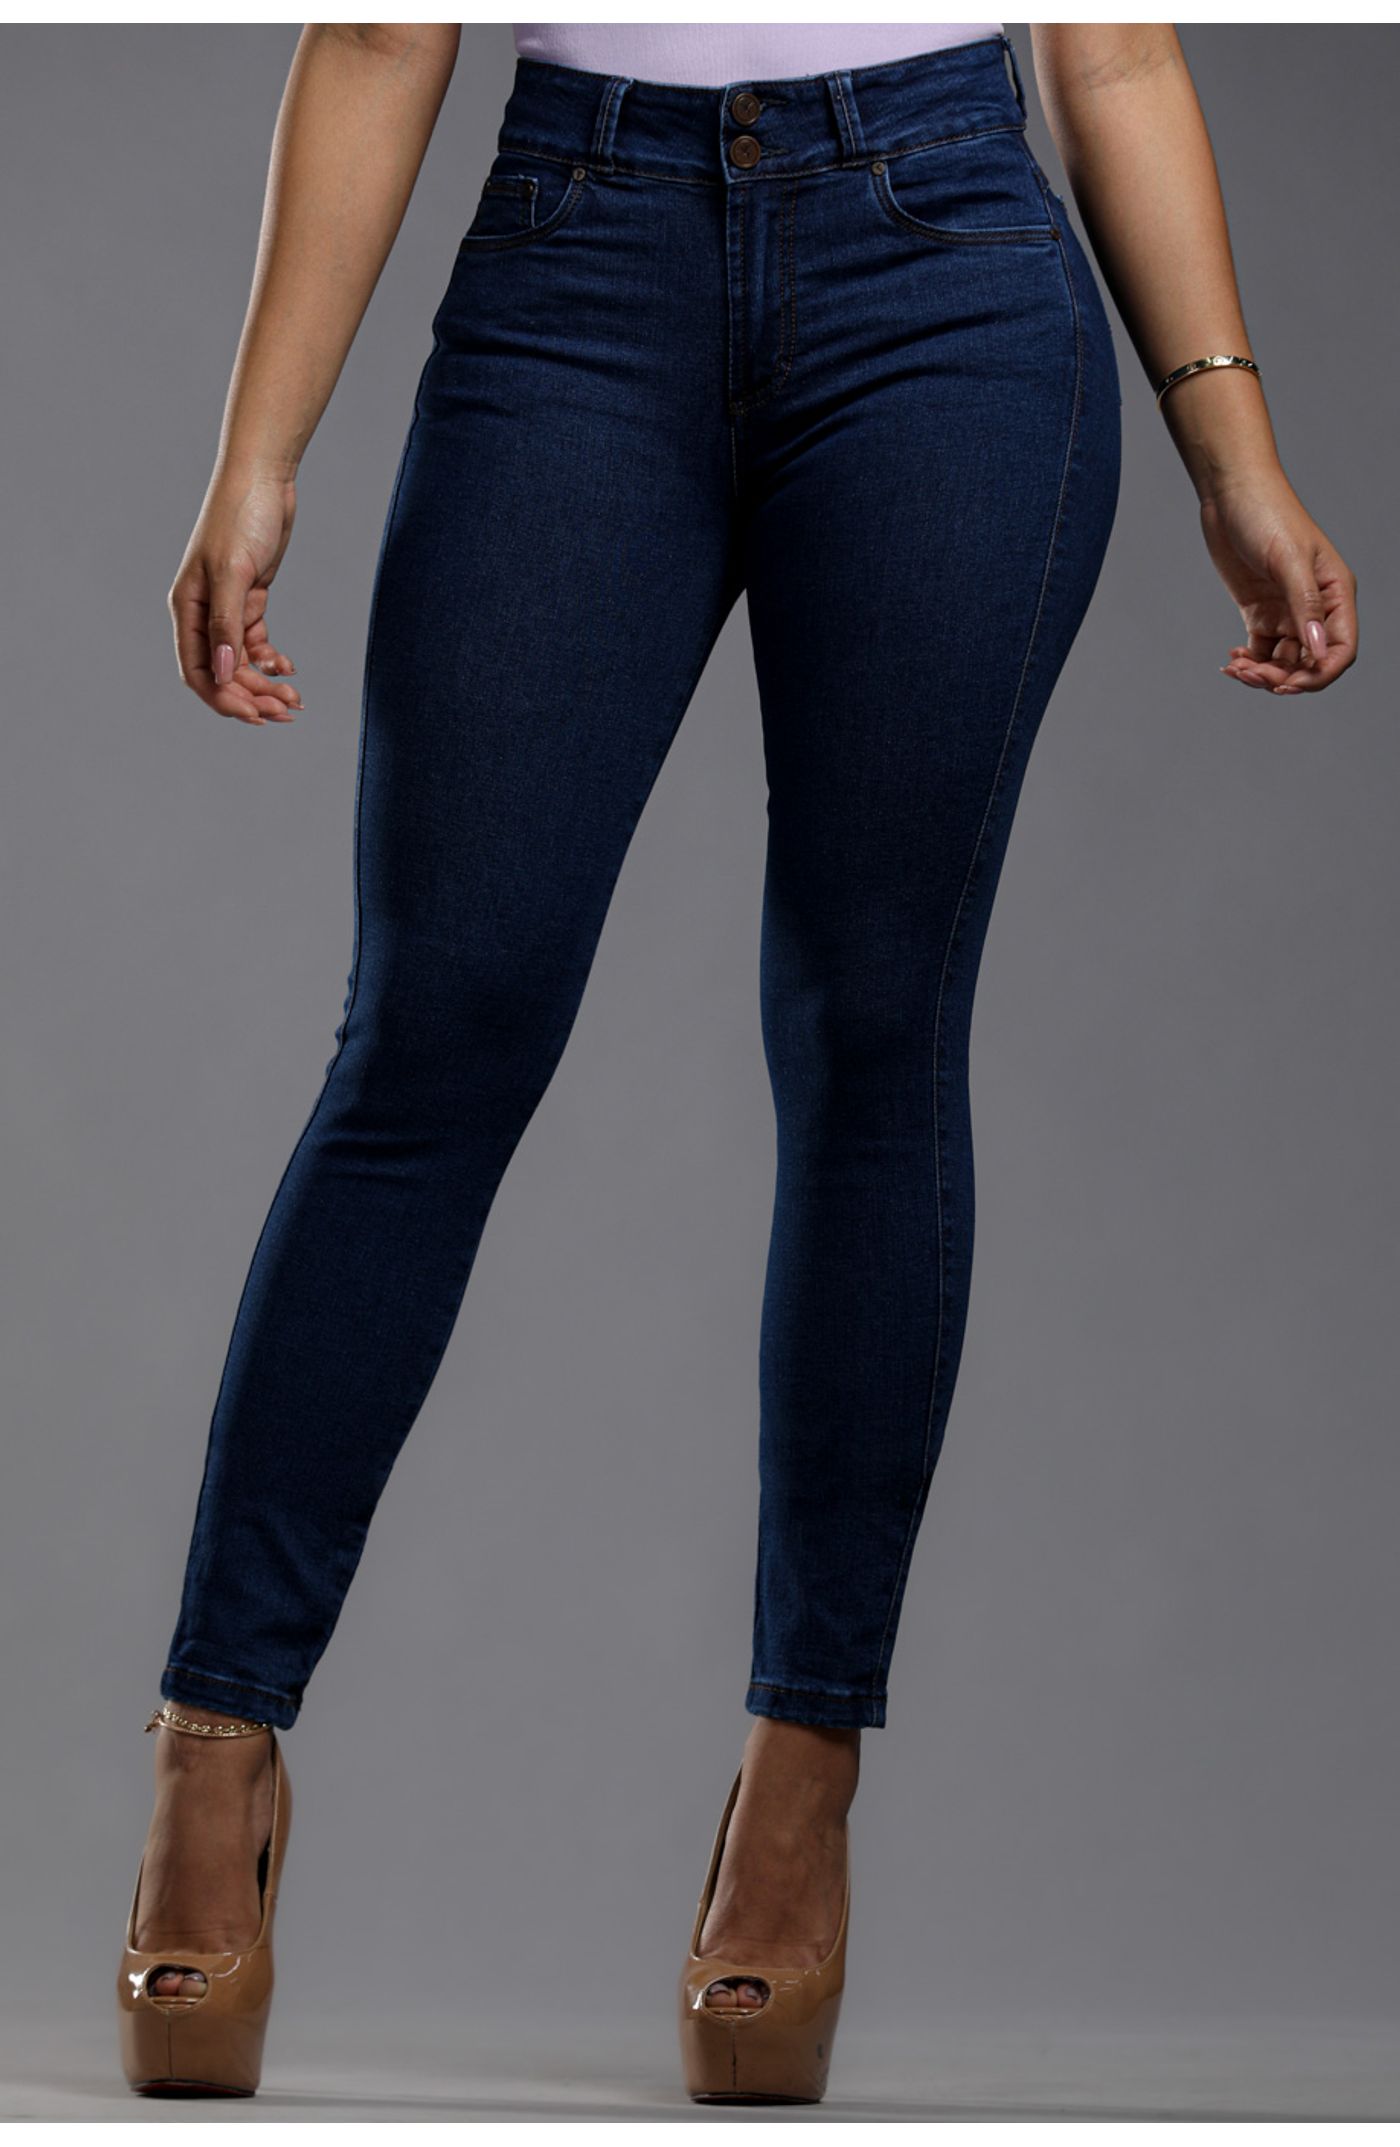 Jeans de mujer focalizado con aplicaciones Msco Jeans